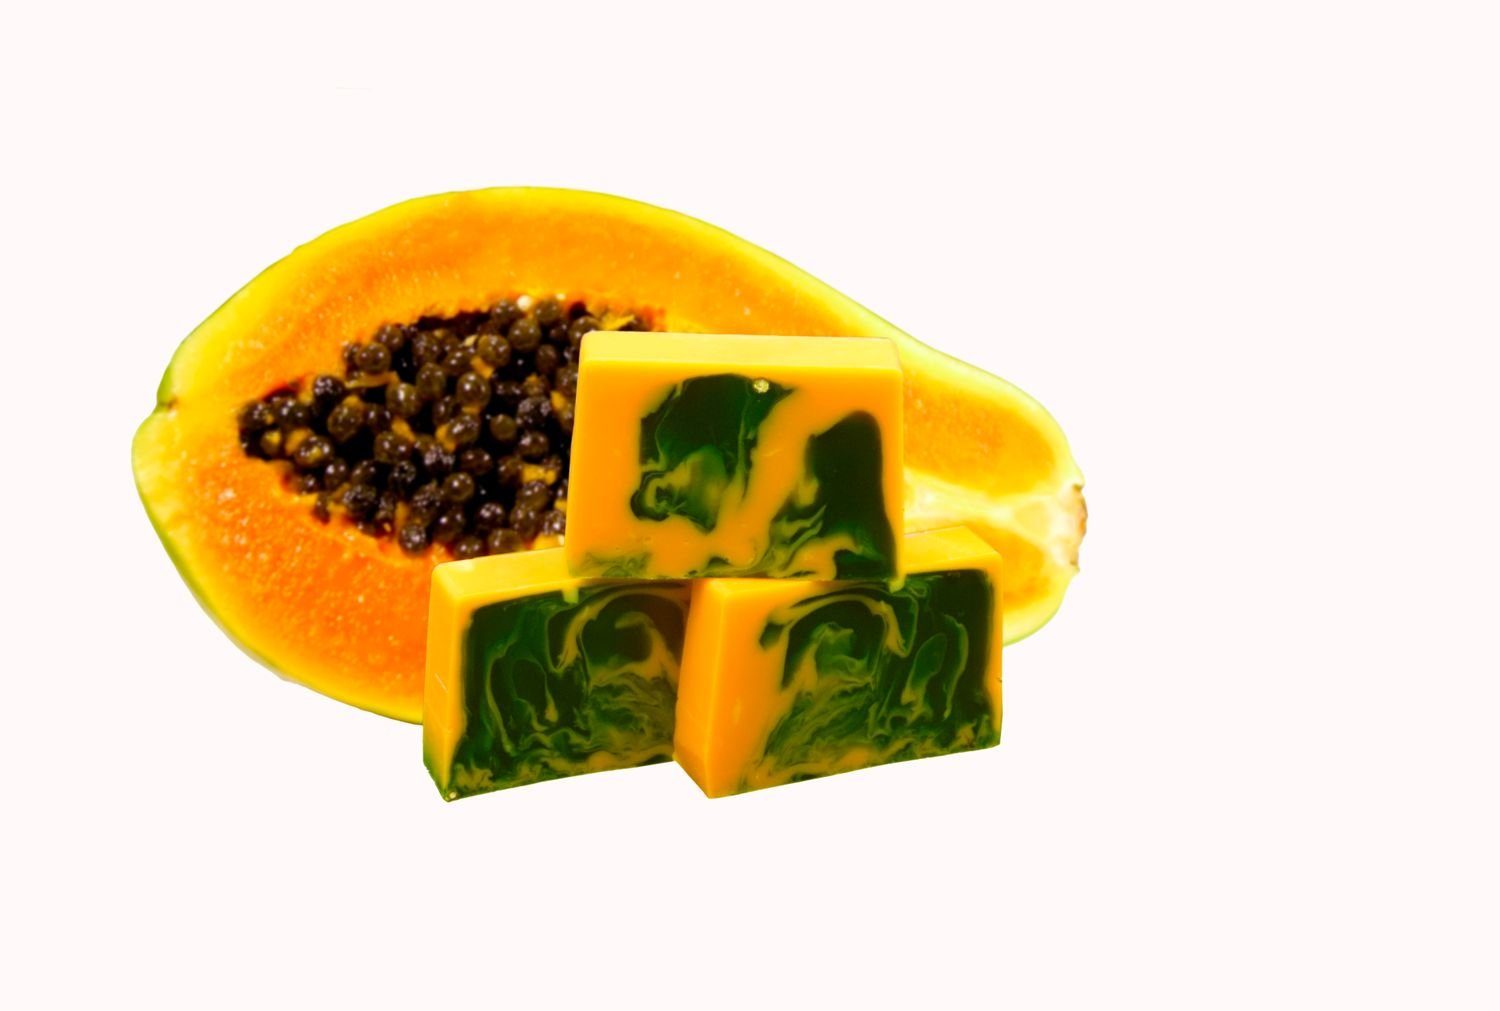 Nesbel - Spüren Sie die Reinheit? Handseife Papaya, Glycerin Hand-und Dusch Seife mit Ziegenmilch 100g